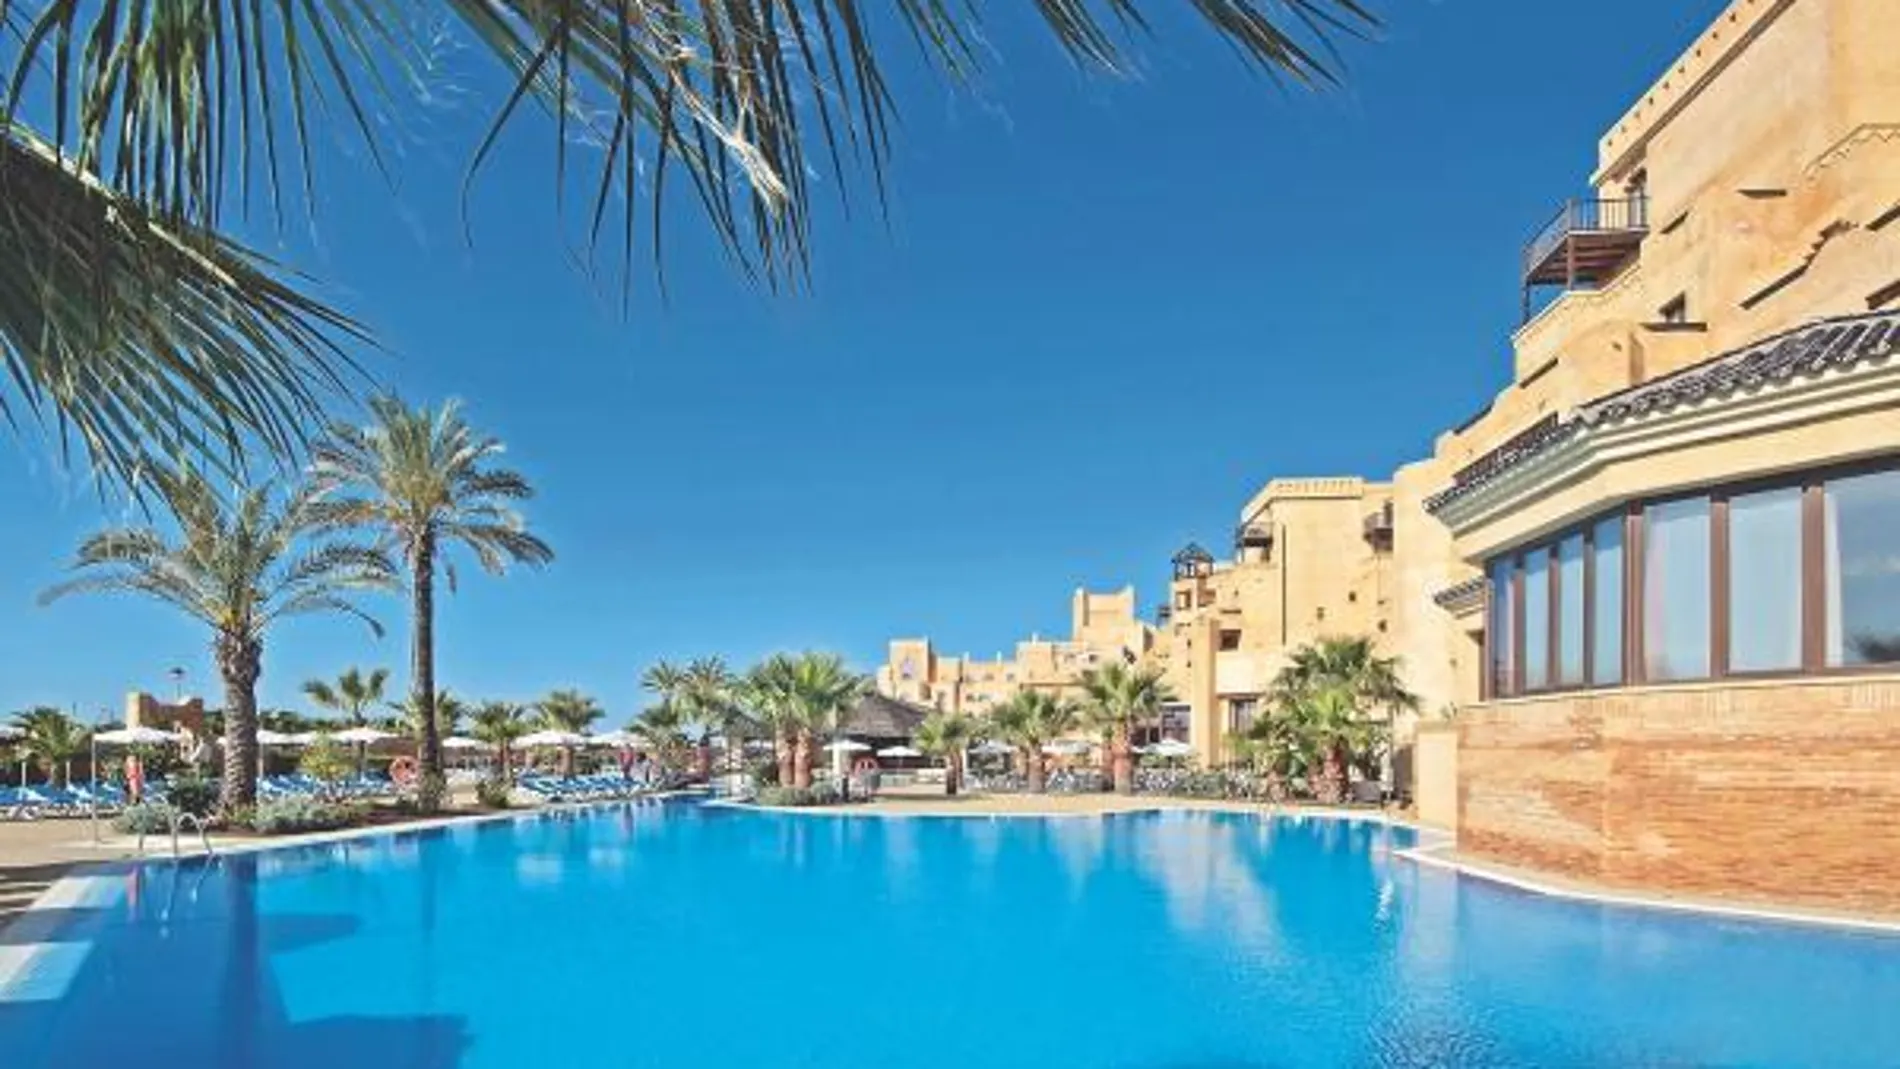 La amplia piscina exterior está rodeada de palmeras y de hamacas en las que resulta una delicia relajarse bajo el sol